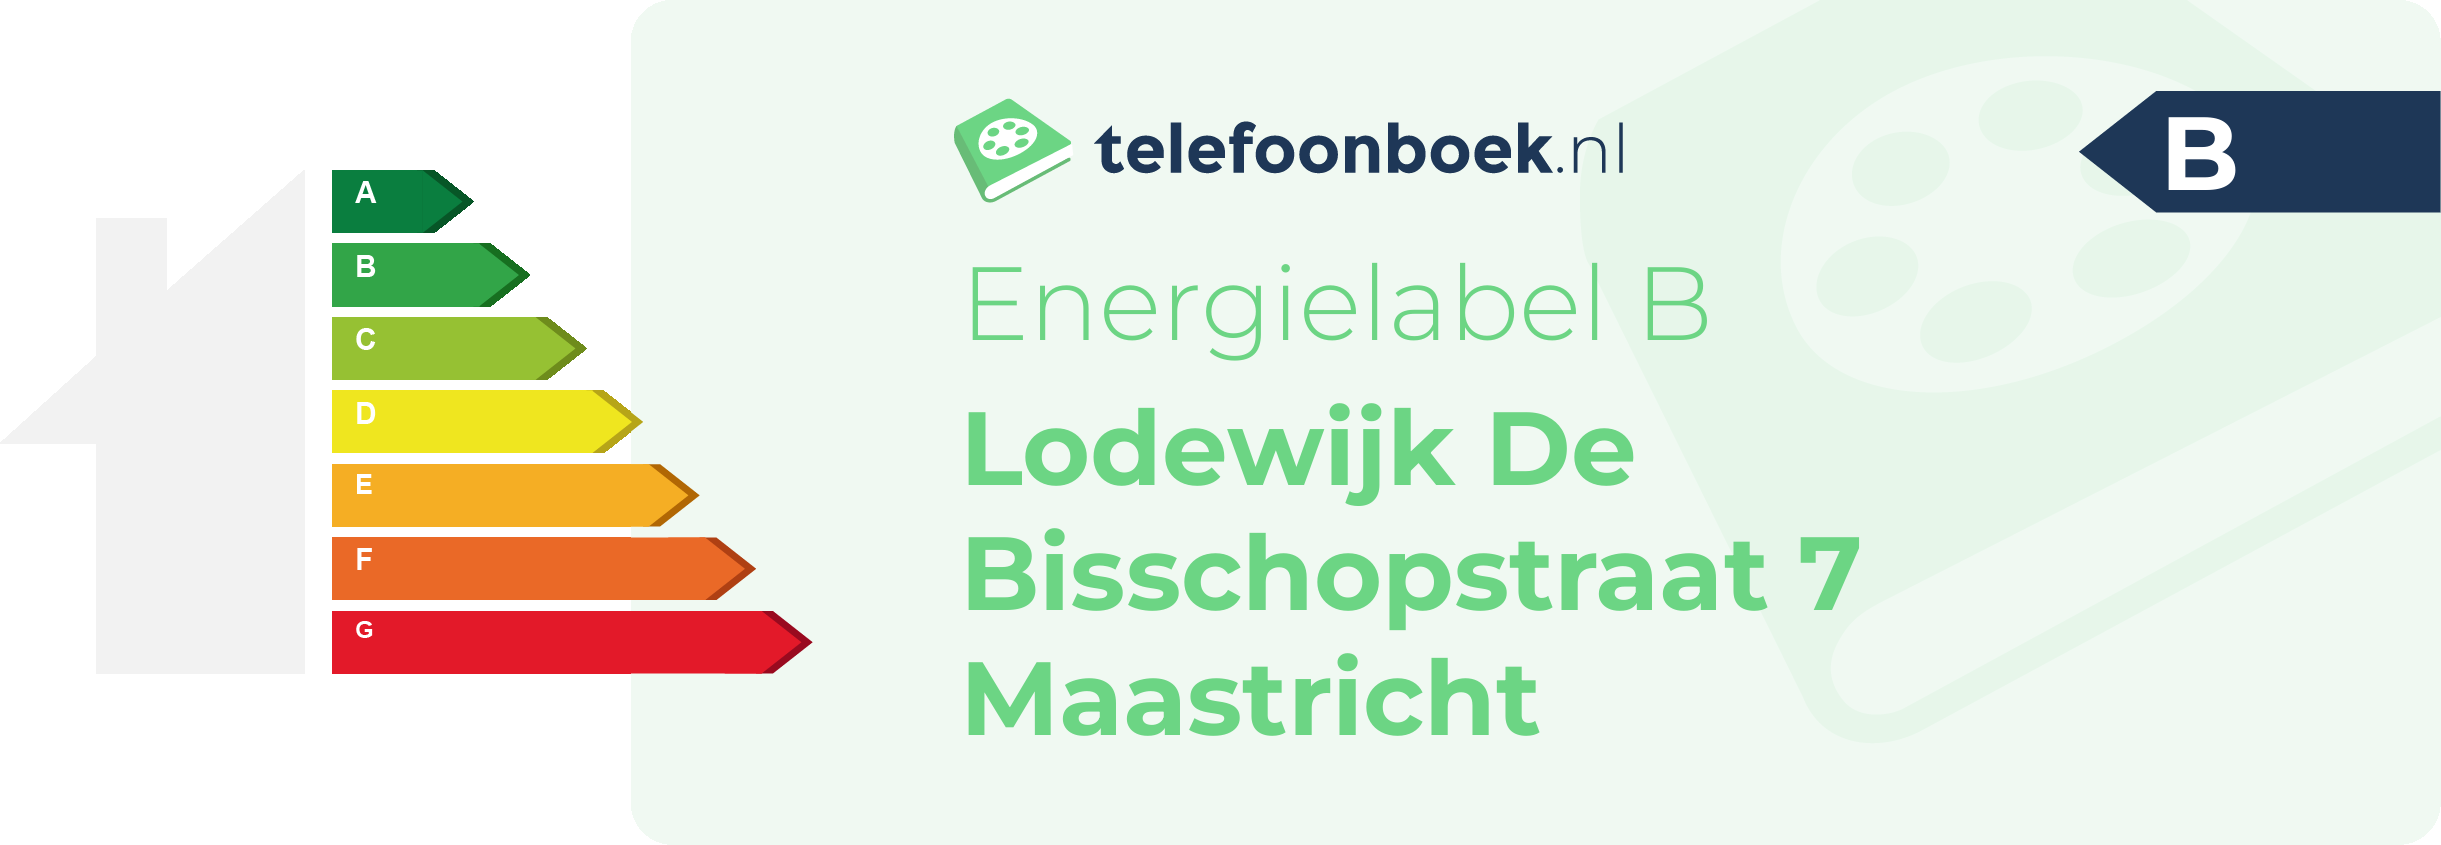 Energielabel Lodewijk De Bisschopstraat 7 Maastricht